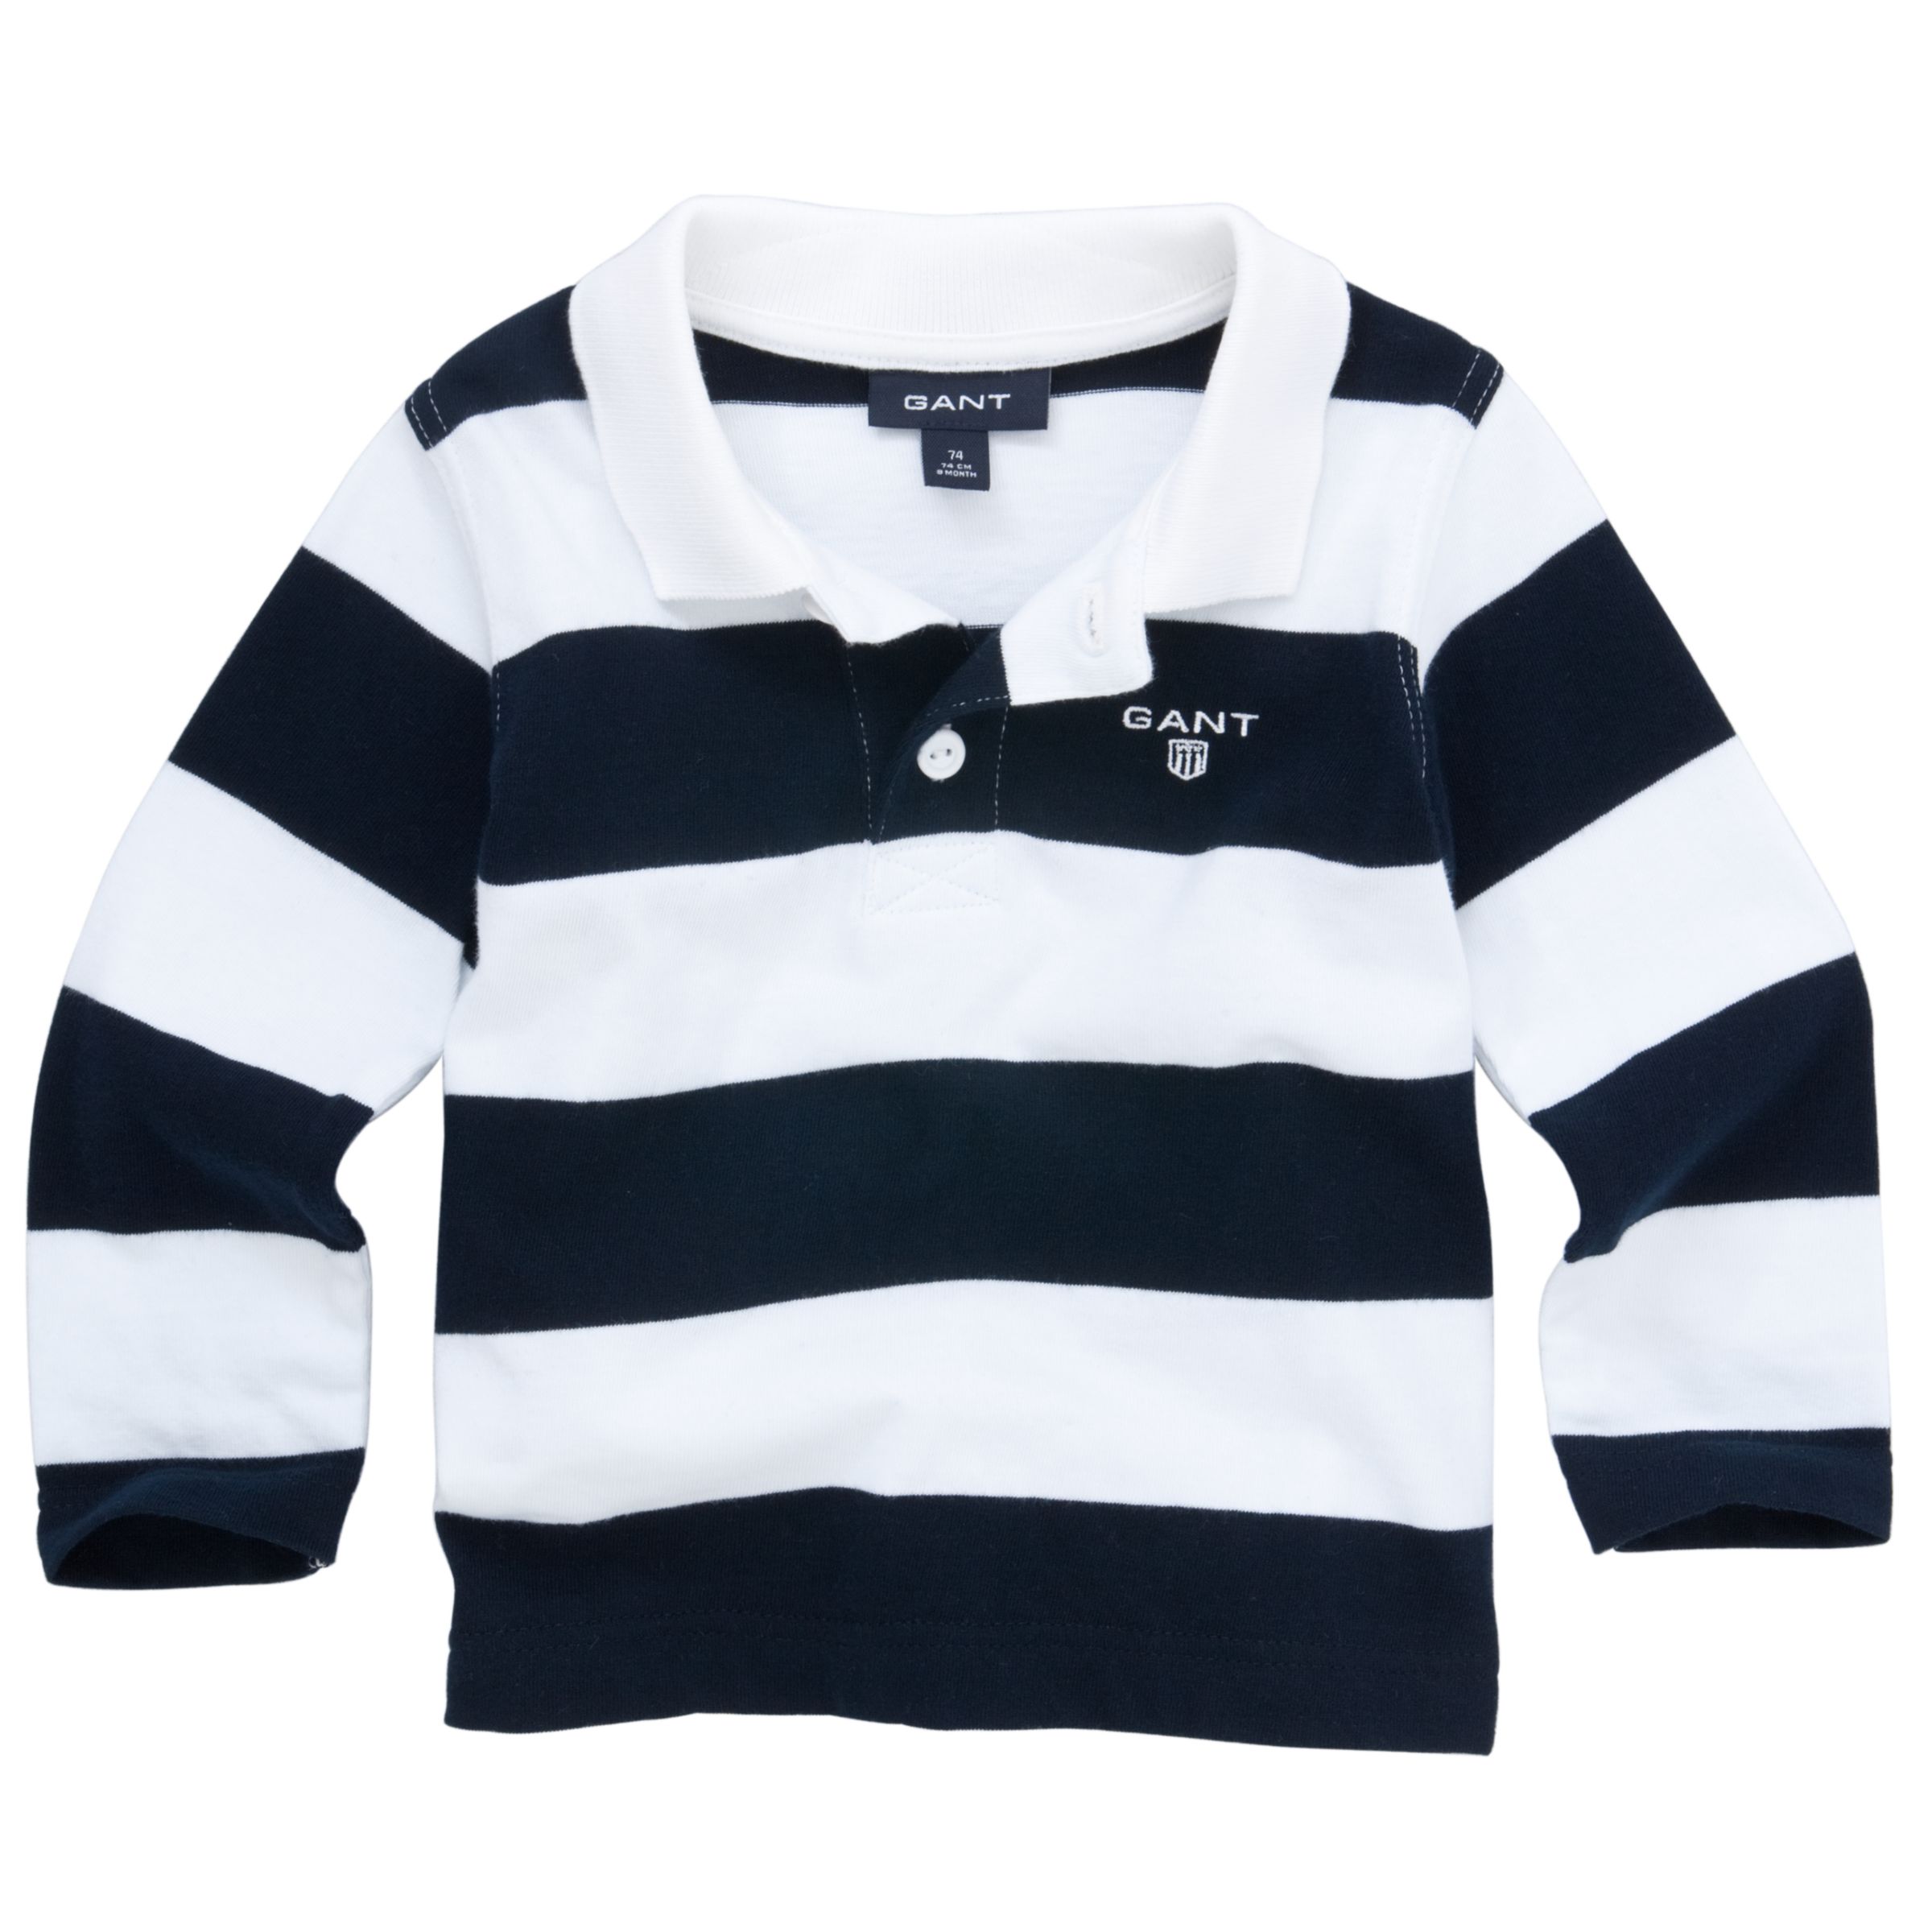 Gant Stripe Print Rugby Shirt, Navy/White